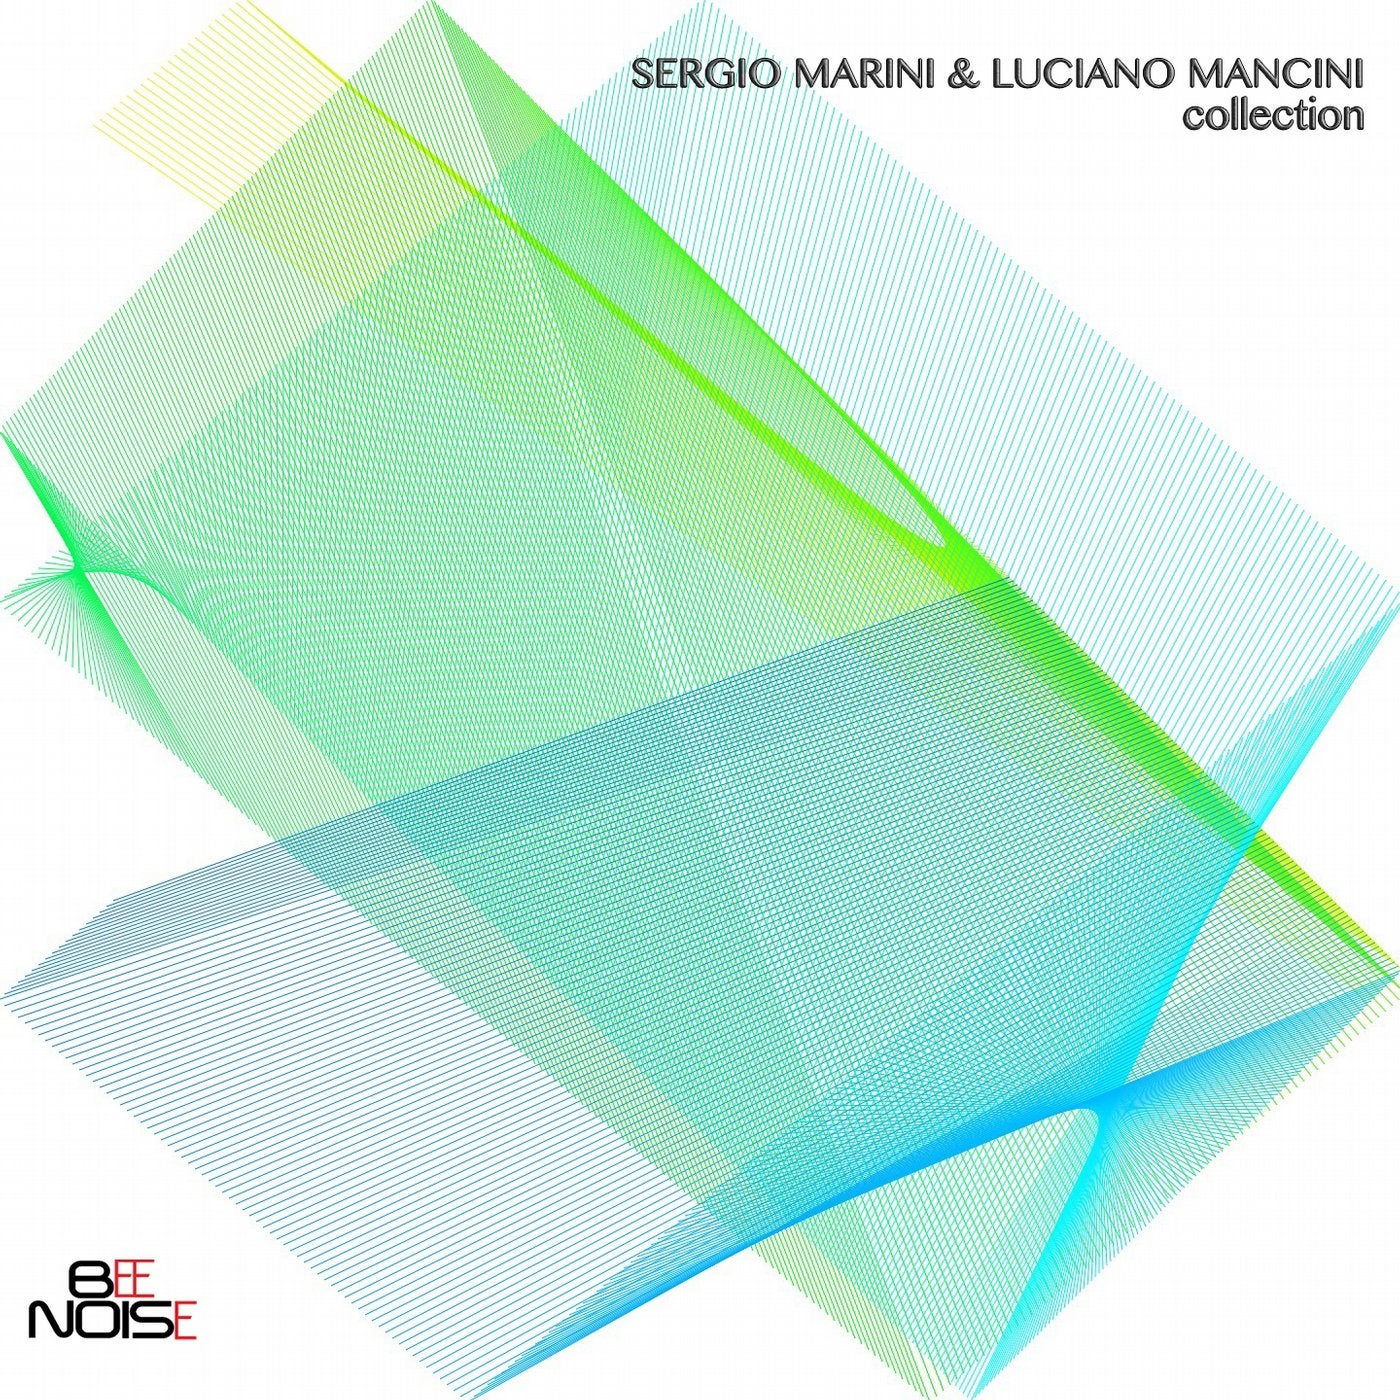 Sergio Marini & Luciano Mancini Collection